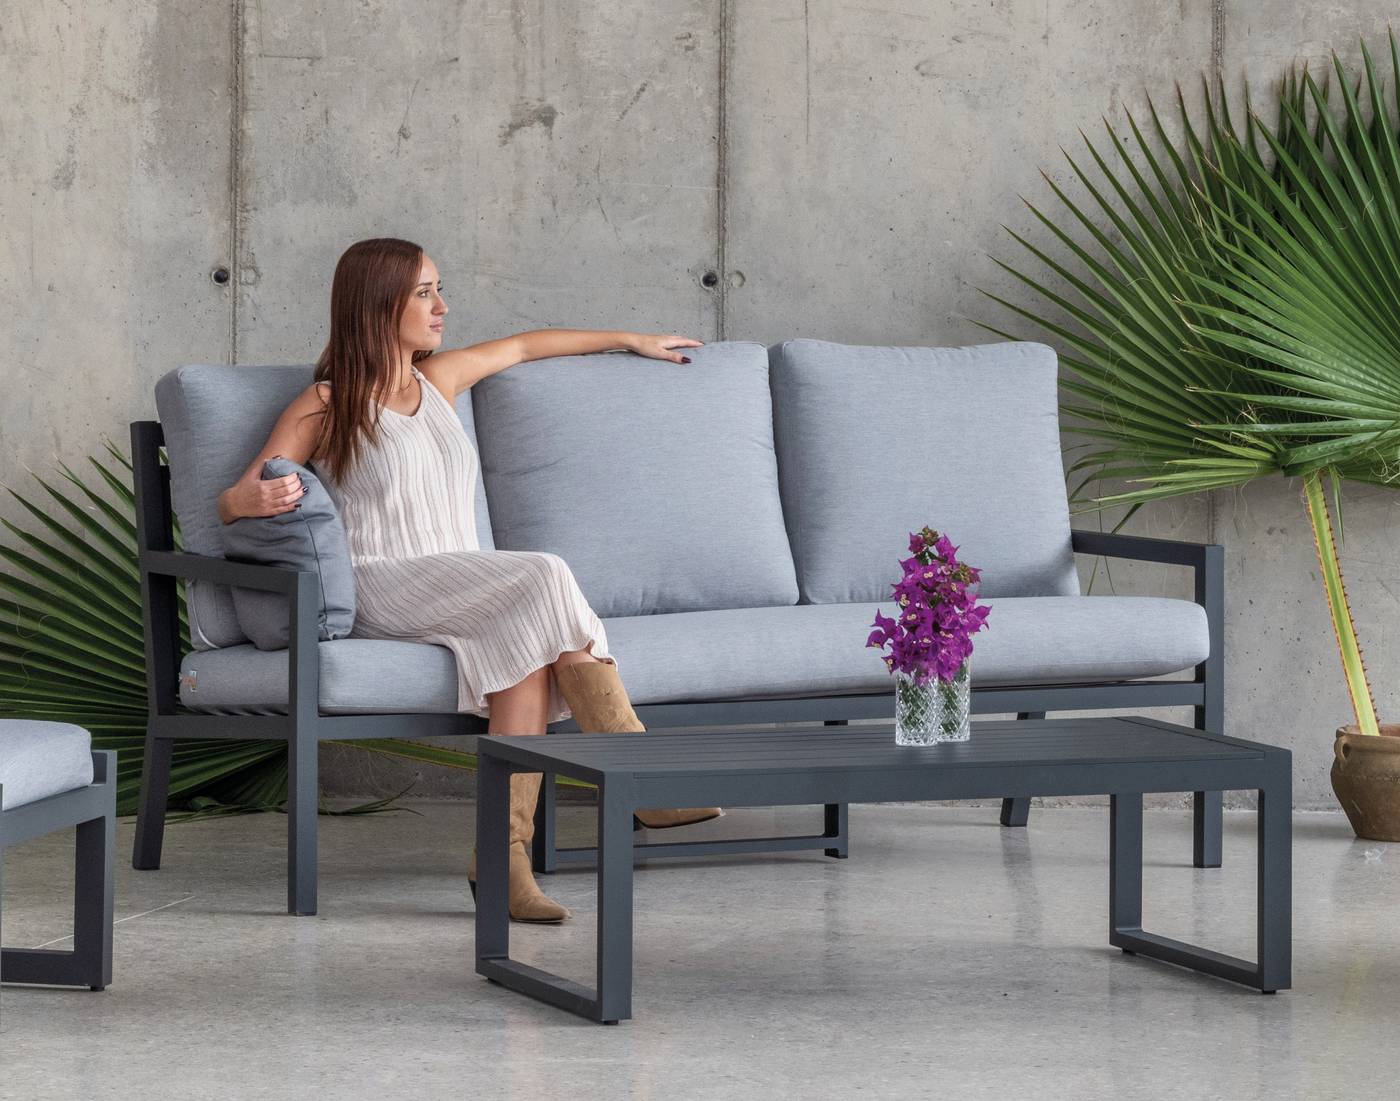 Set Aluminio Luxe Dounvil-10 - Conjunto de aluminio de lujo que incluye: un sofá tres plazas, dos sillones, una mesa de centro,  dos reposapiés y cojines.